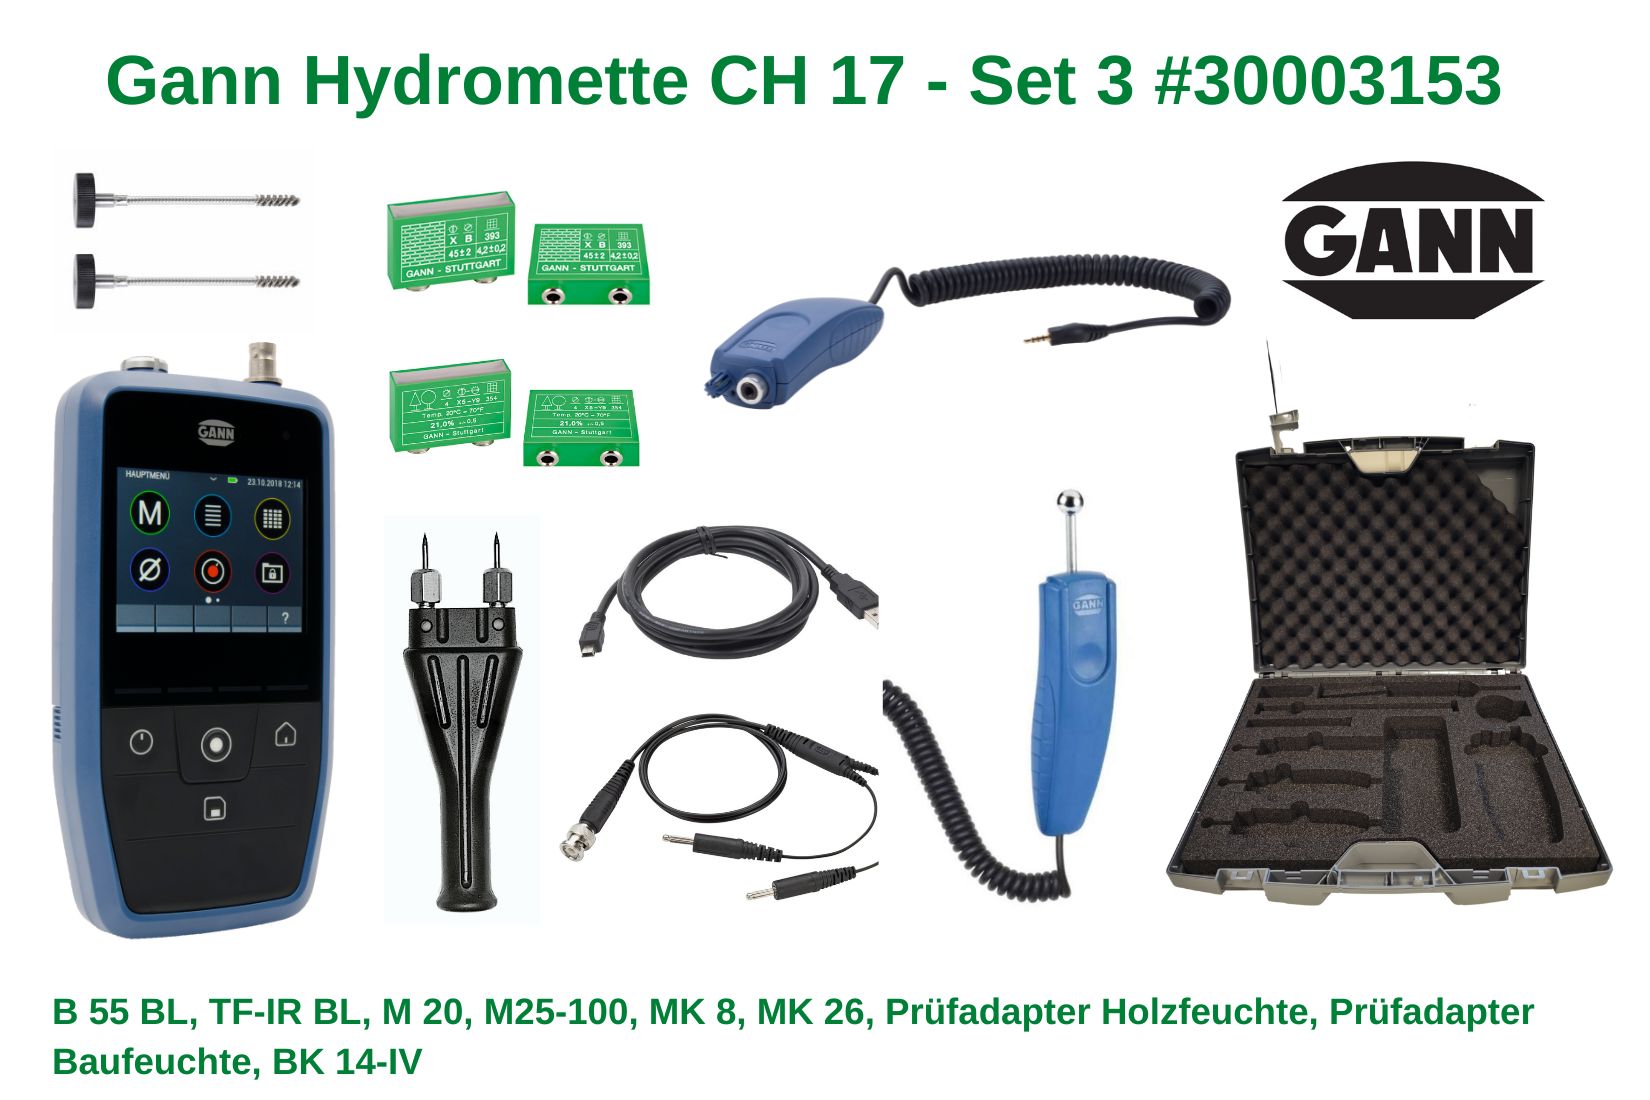 Gann Hydromette CH 17 - Set 3 mit viel  Zubehörcartwishlistchevron-downchevron-downchevron-downcart